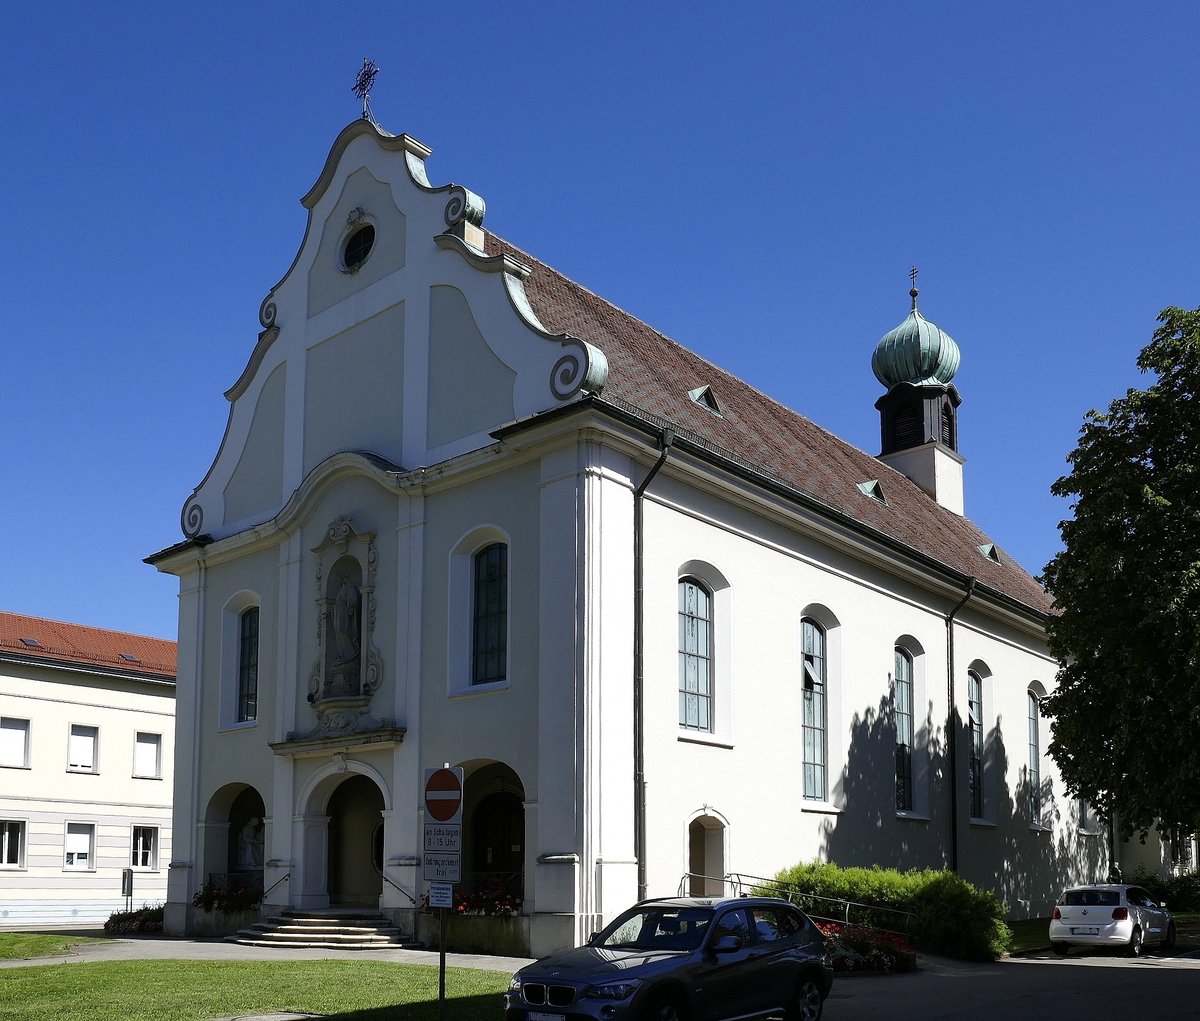 Herten, Stadtteil von Rheinfelden (Baden), die evangelische Kirche St.Josef, der neobarocke Bau wurde 1928-29 als Anstaltskirche des St.Josefhauses erbaut, Sept.2019